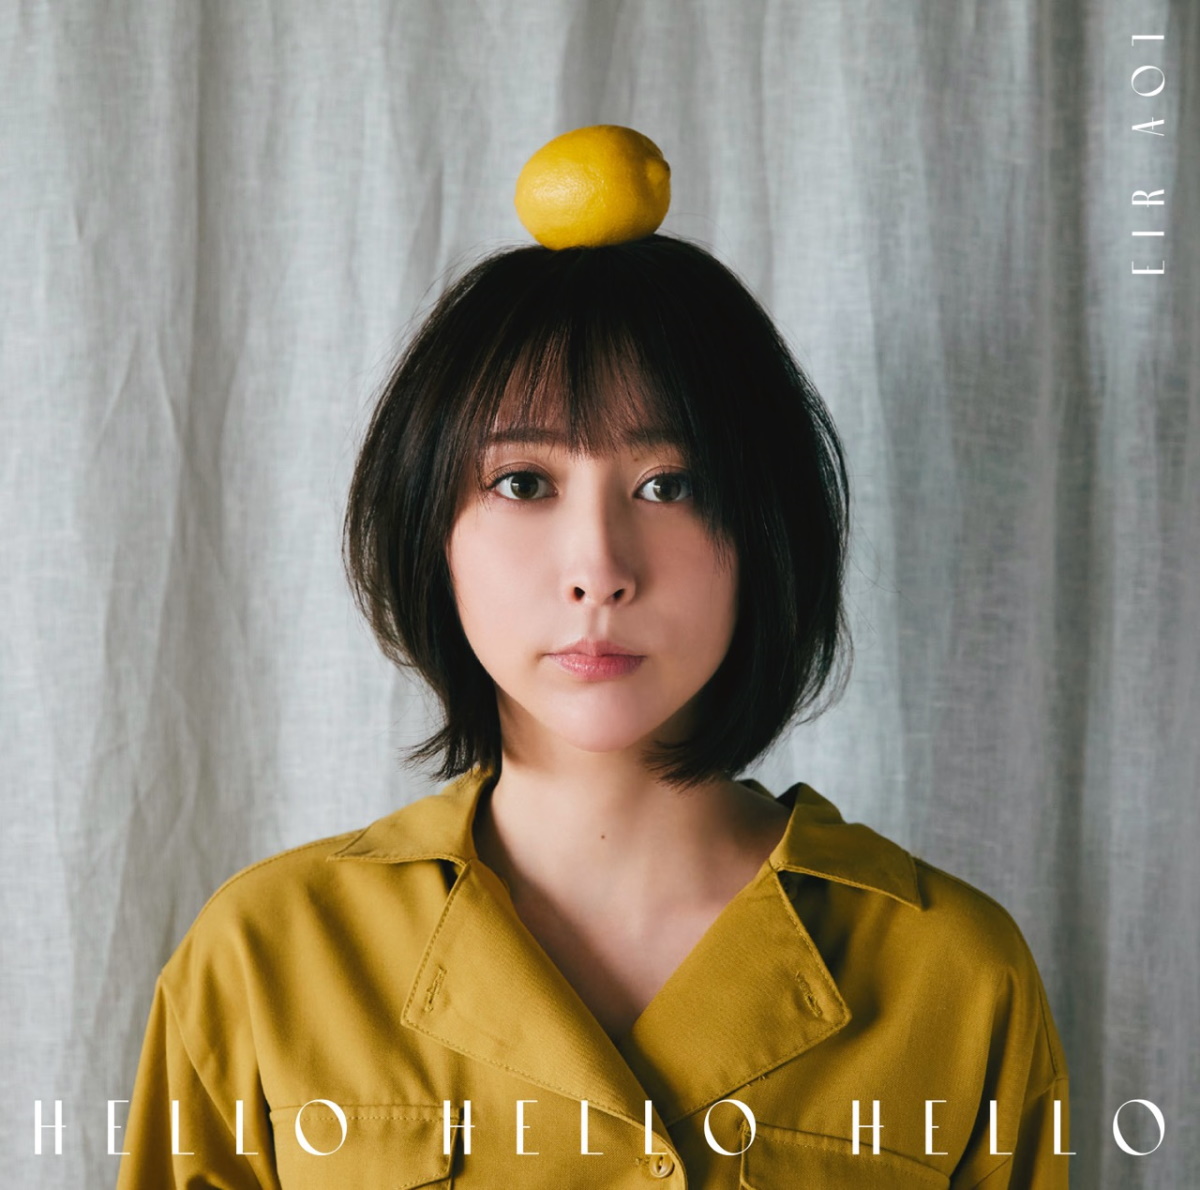 Cover art for『Eir Aoi - HELLO HELLO HELLO』from the release『HELLO HELLO HELLO』